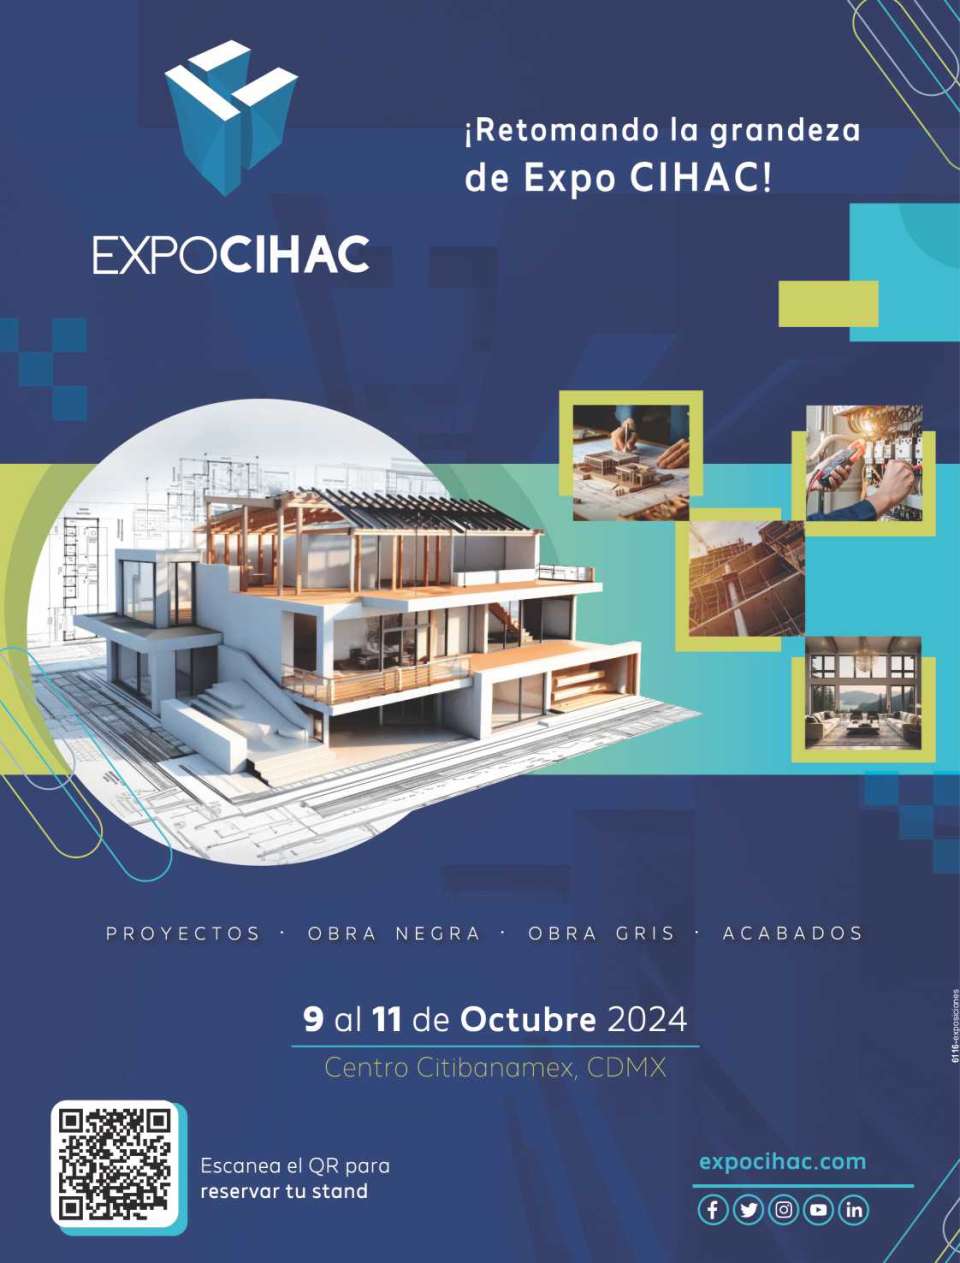 CIHAC Expo, from October 9 to 11, 2024 at Centro CitiBanamex, Mexico City.